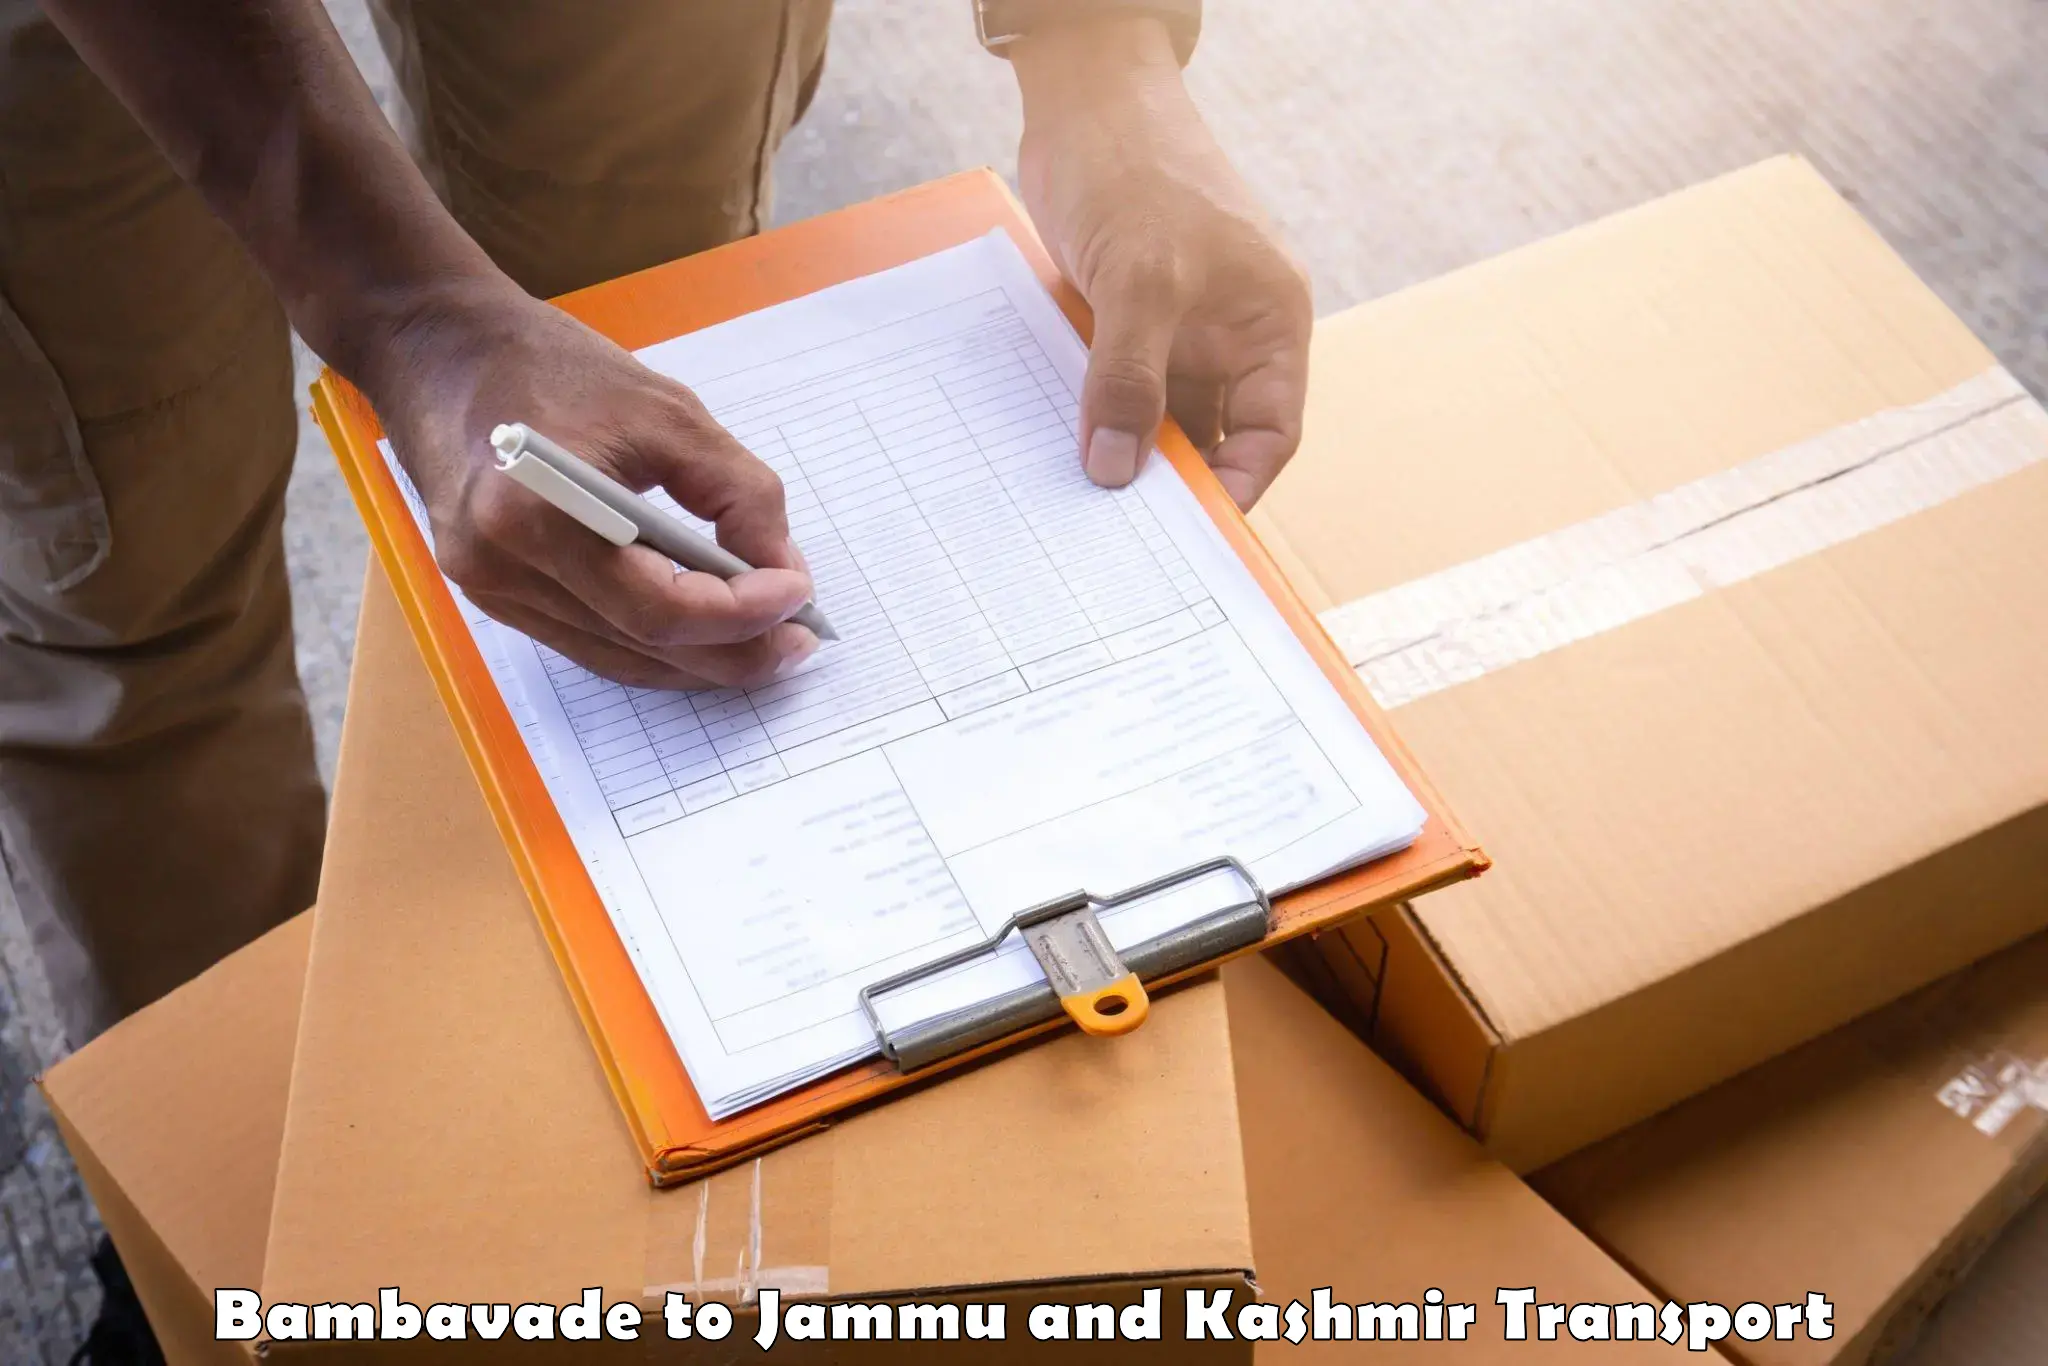 Commercial transport service Bambavade to Kishtwar